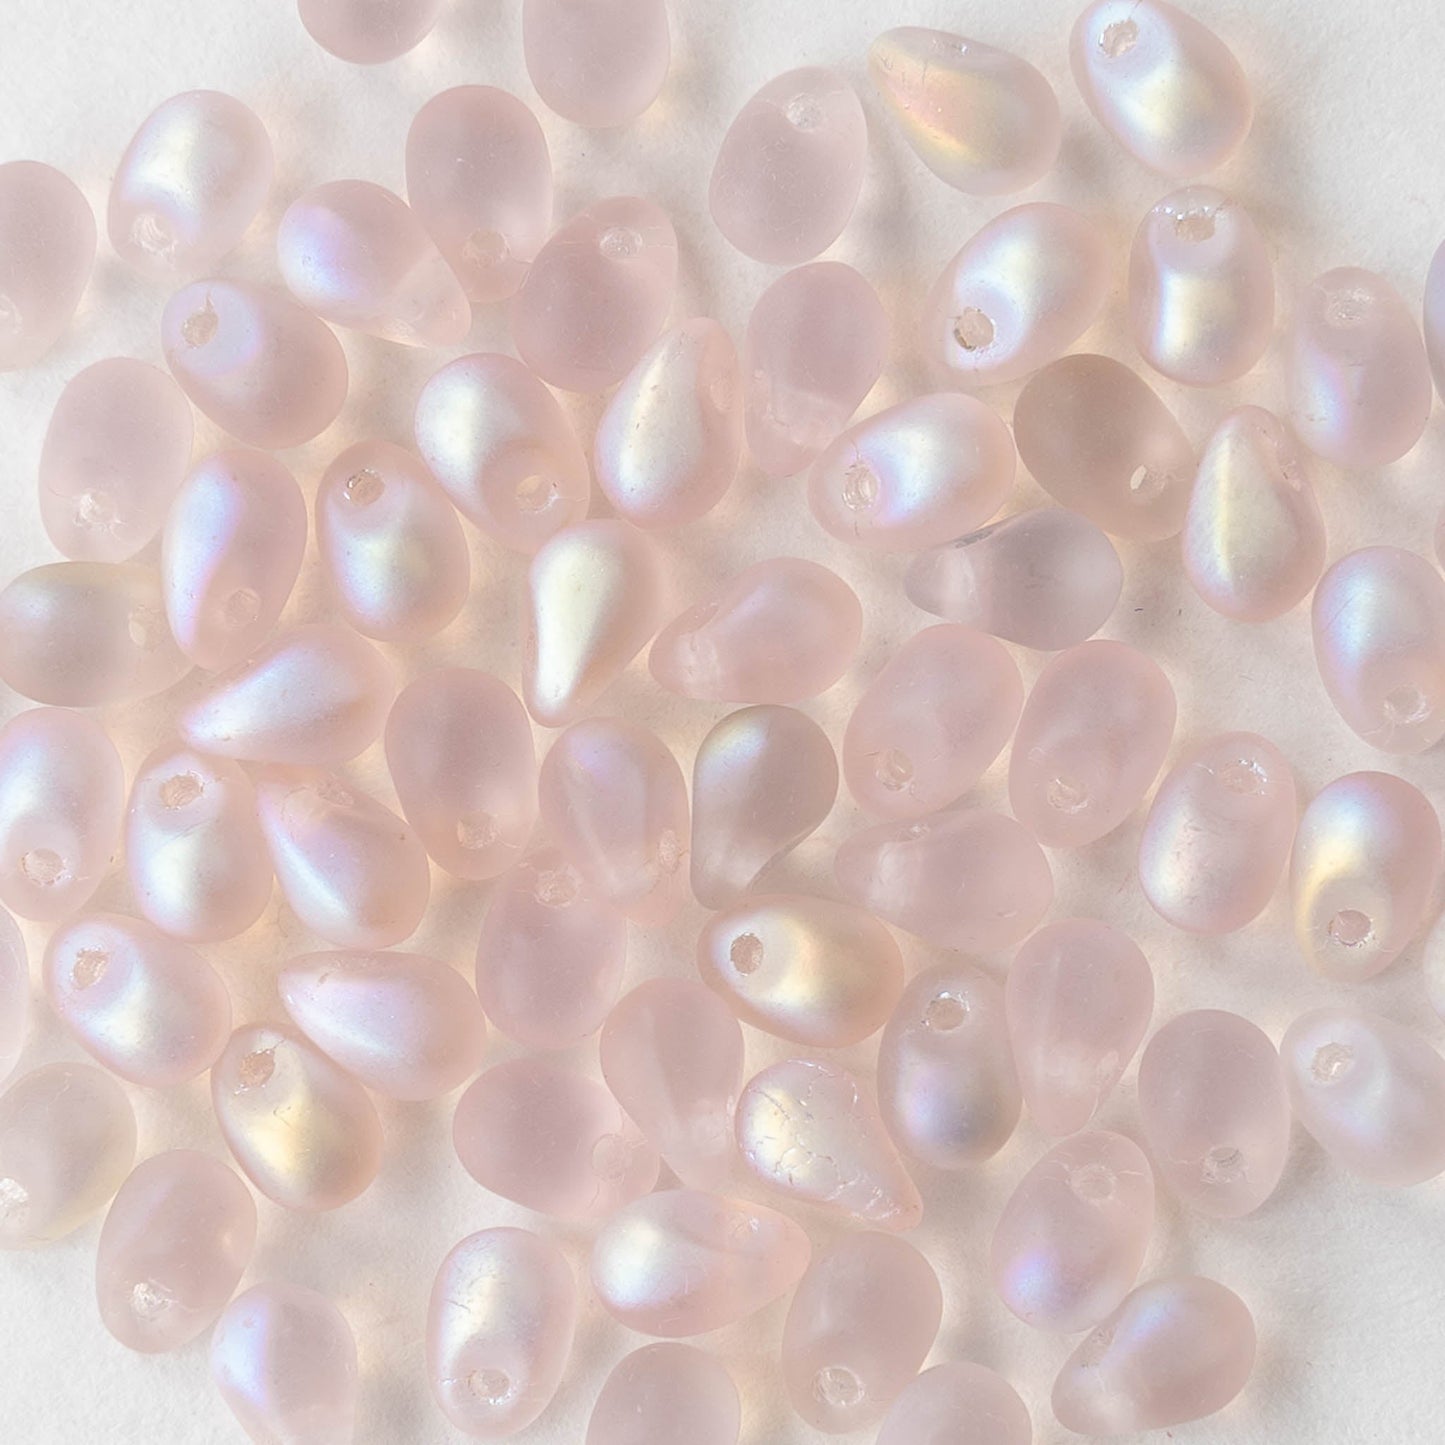 4x6mm Glass Teardrop Beads - Light Pink Matte AB - 100 Beads